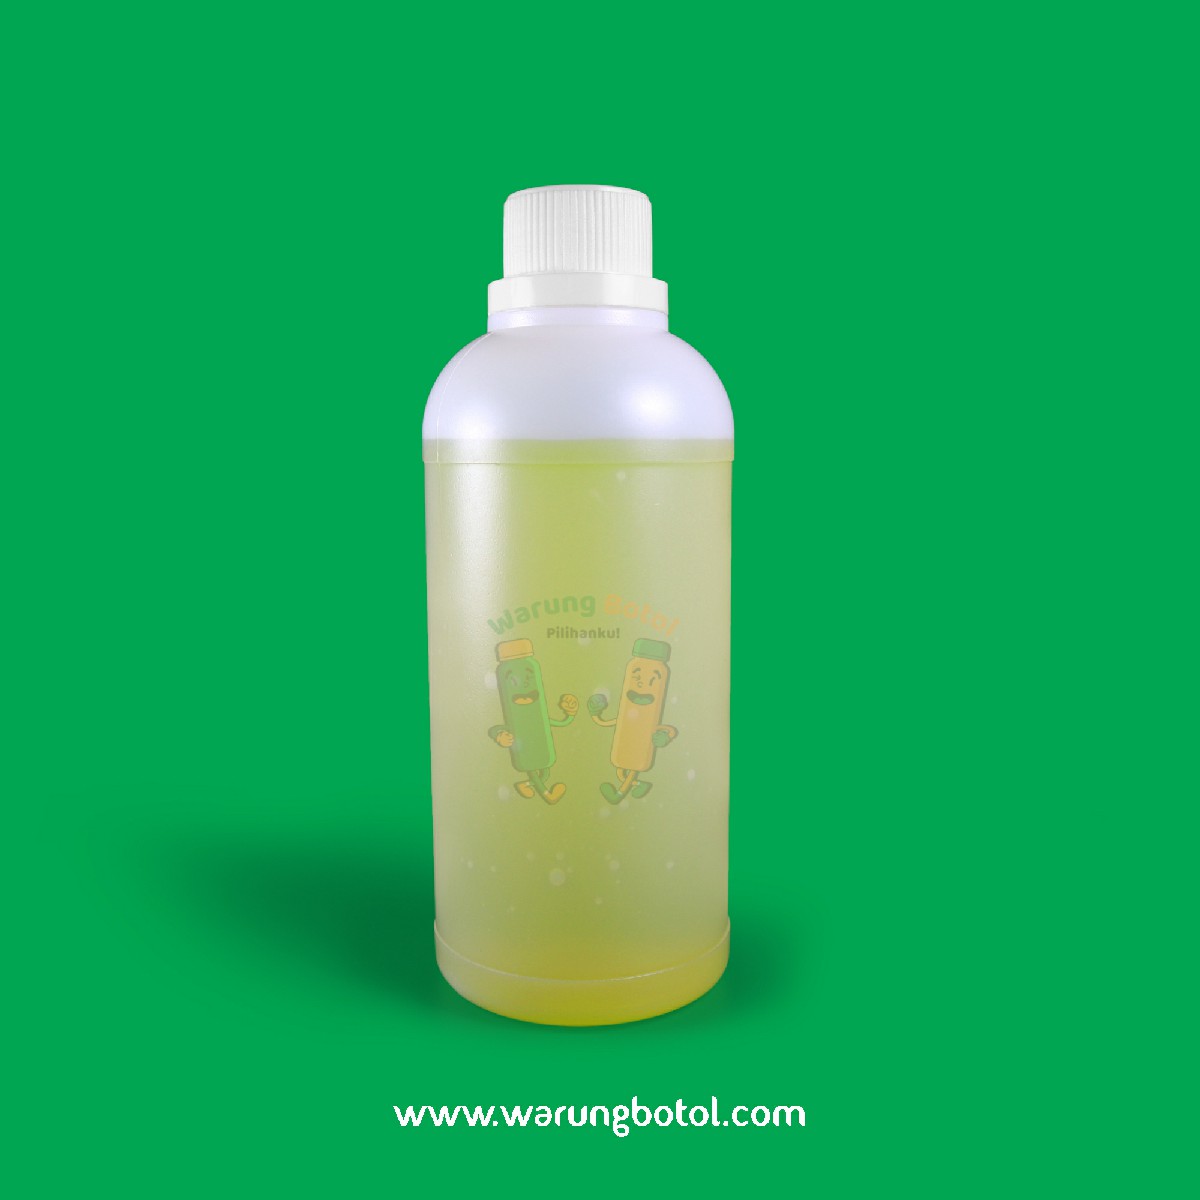 distributor toko jual botol plastik labor untuk bahan kimia 500ml natural murah terdekat bandung jakarta bogor bekasi